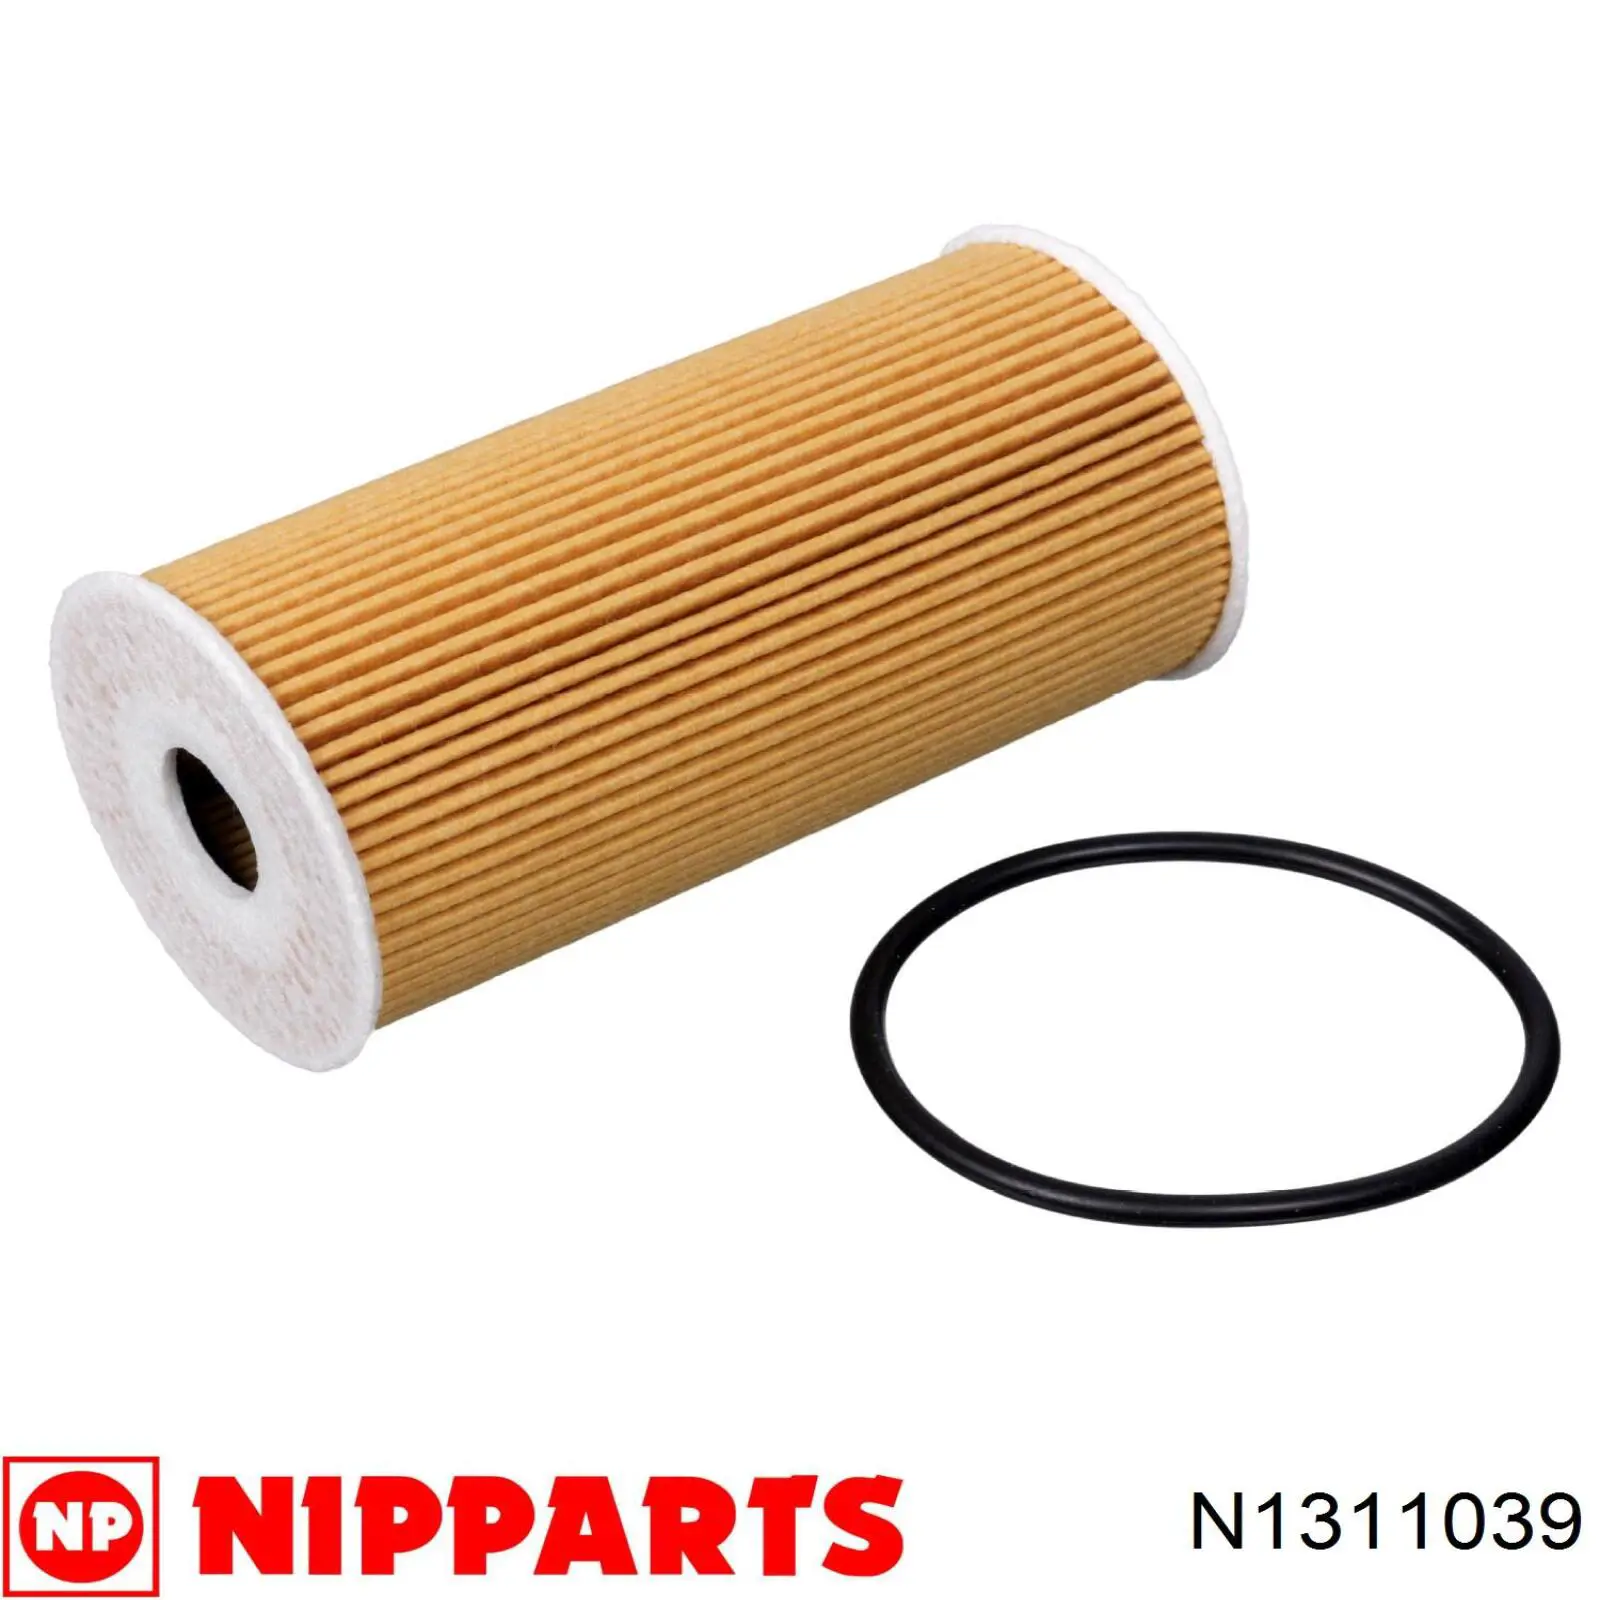 N1311039 Nipparts filtro de aceite